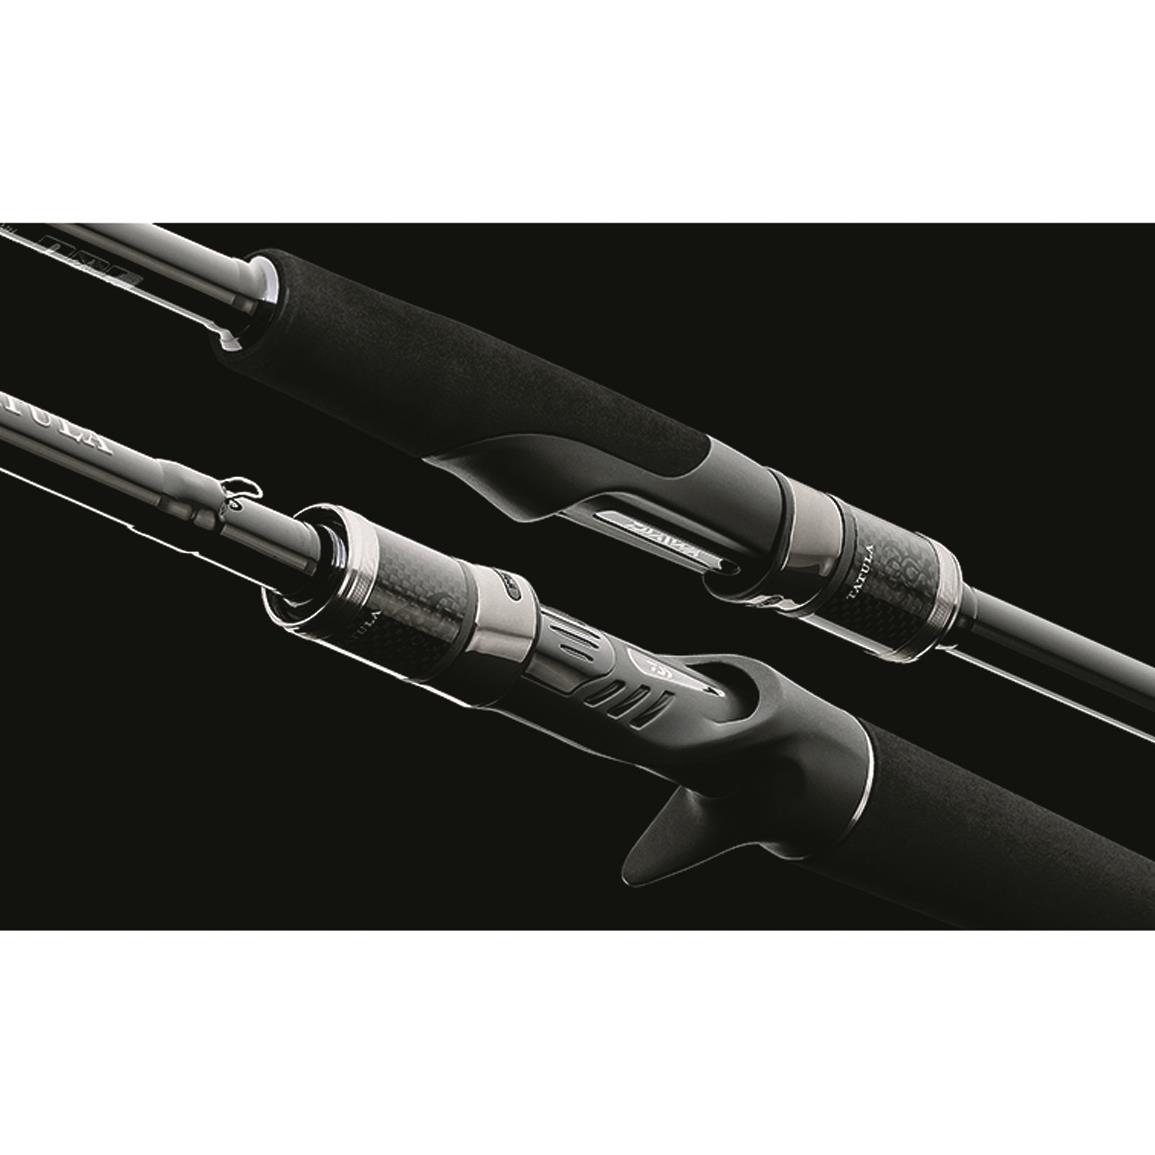 Shimano Scimitar Salmon/Steelhead Spinning Rod, 8'6 Length, Medium, Fast -  730484, Spinning Rods at Sportsman's Guide